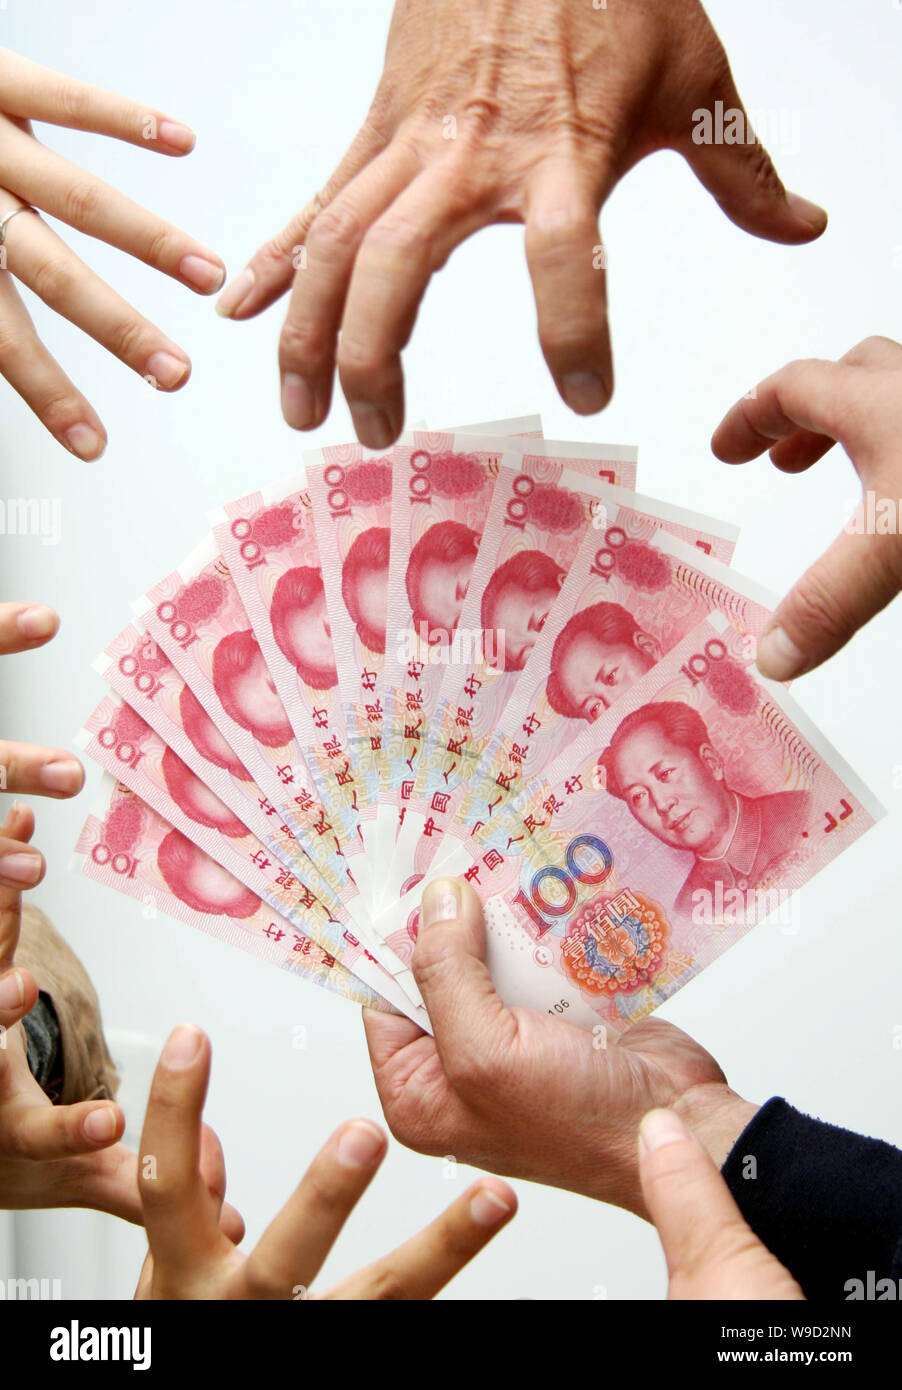 Creative foto Schlüsselwörter: China, Chinesisch, RMB, Renminbi Yuan CNY, Geld, Bank, Notiz, Banknote, Papier, Währung, Wirtschaft, Finanzen, Finanz, Hand, Hände, Finger, fing Stockfoto